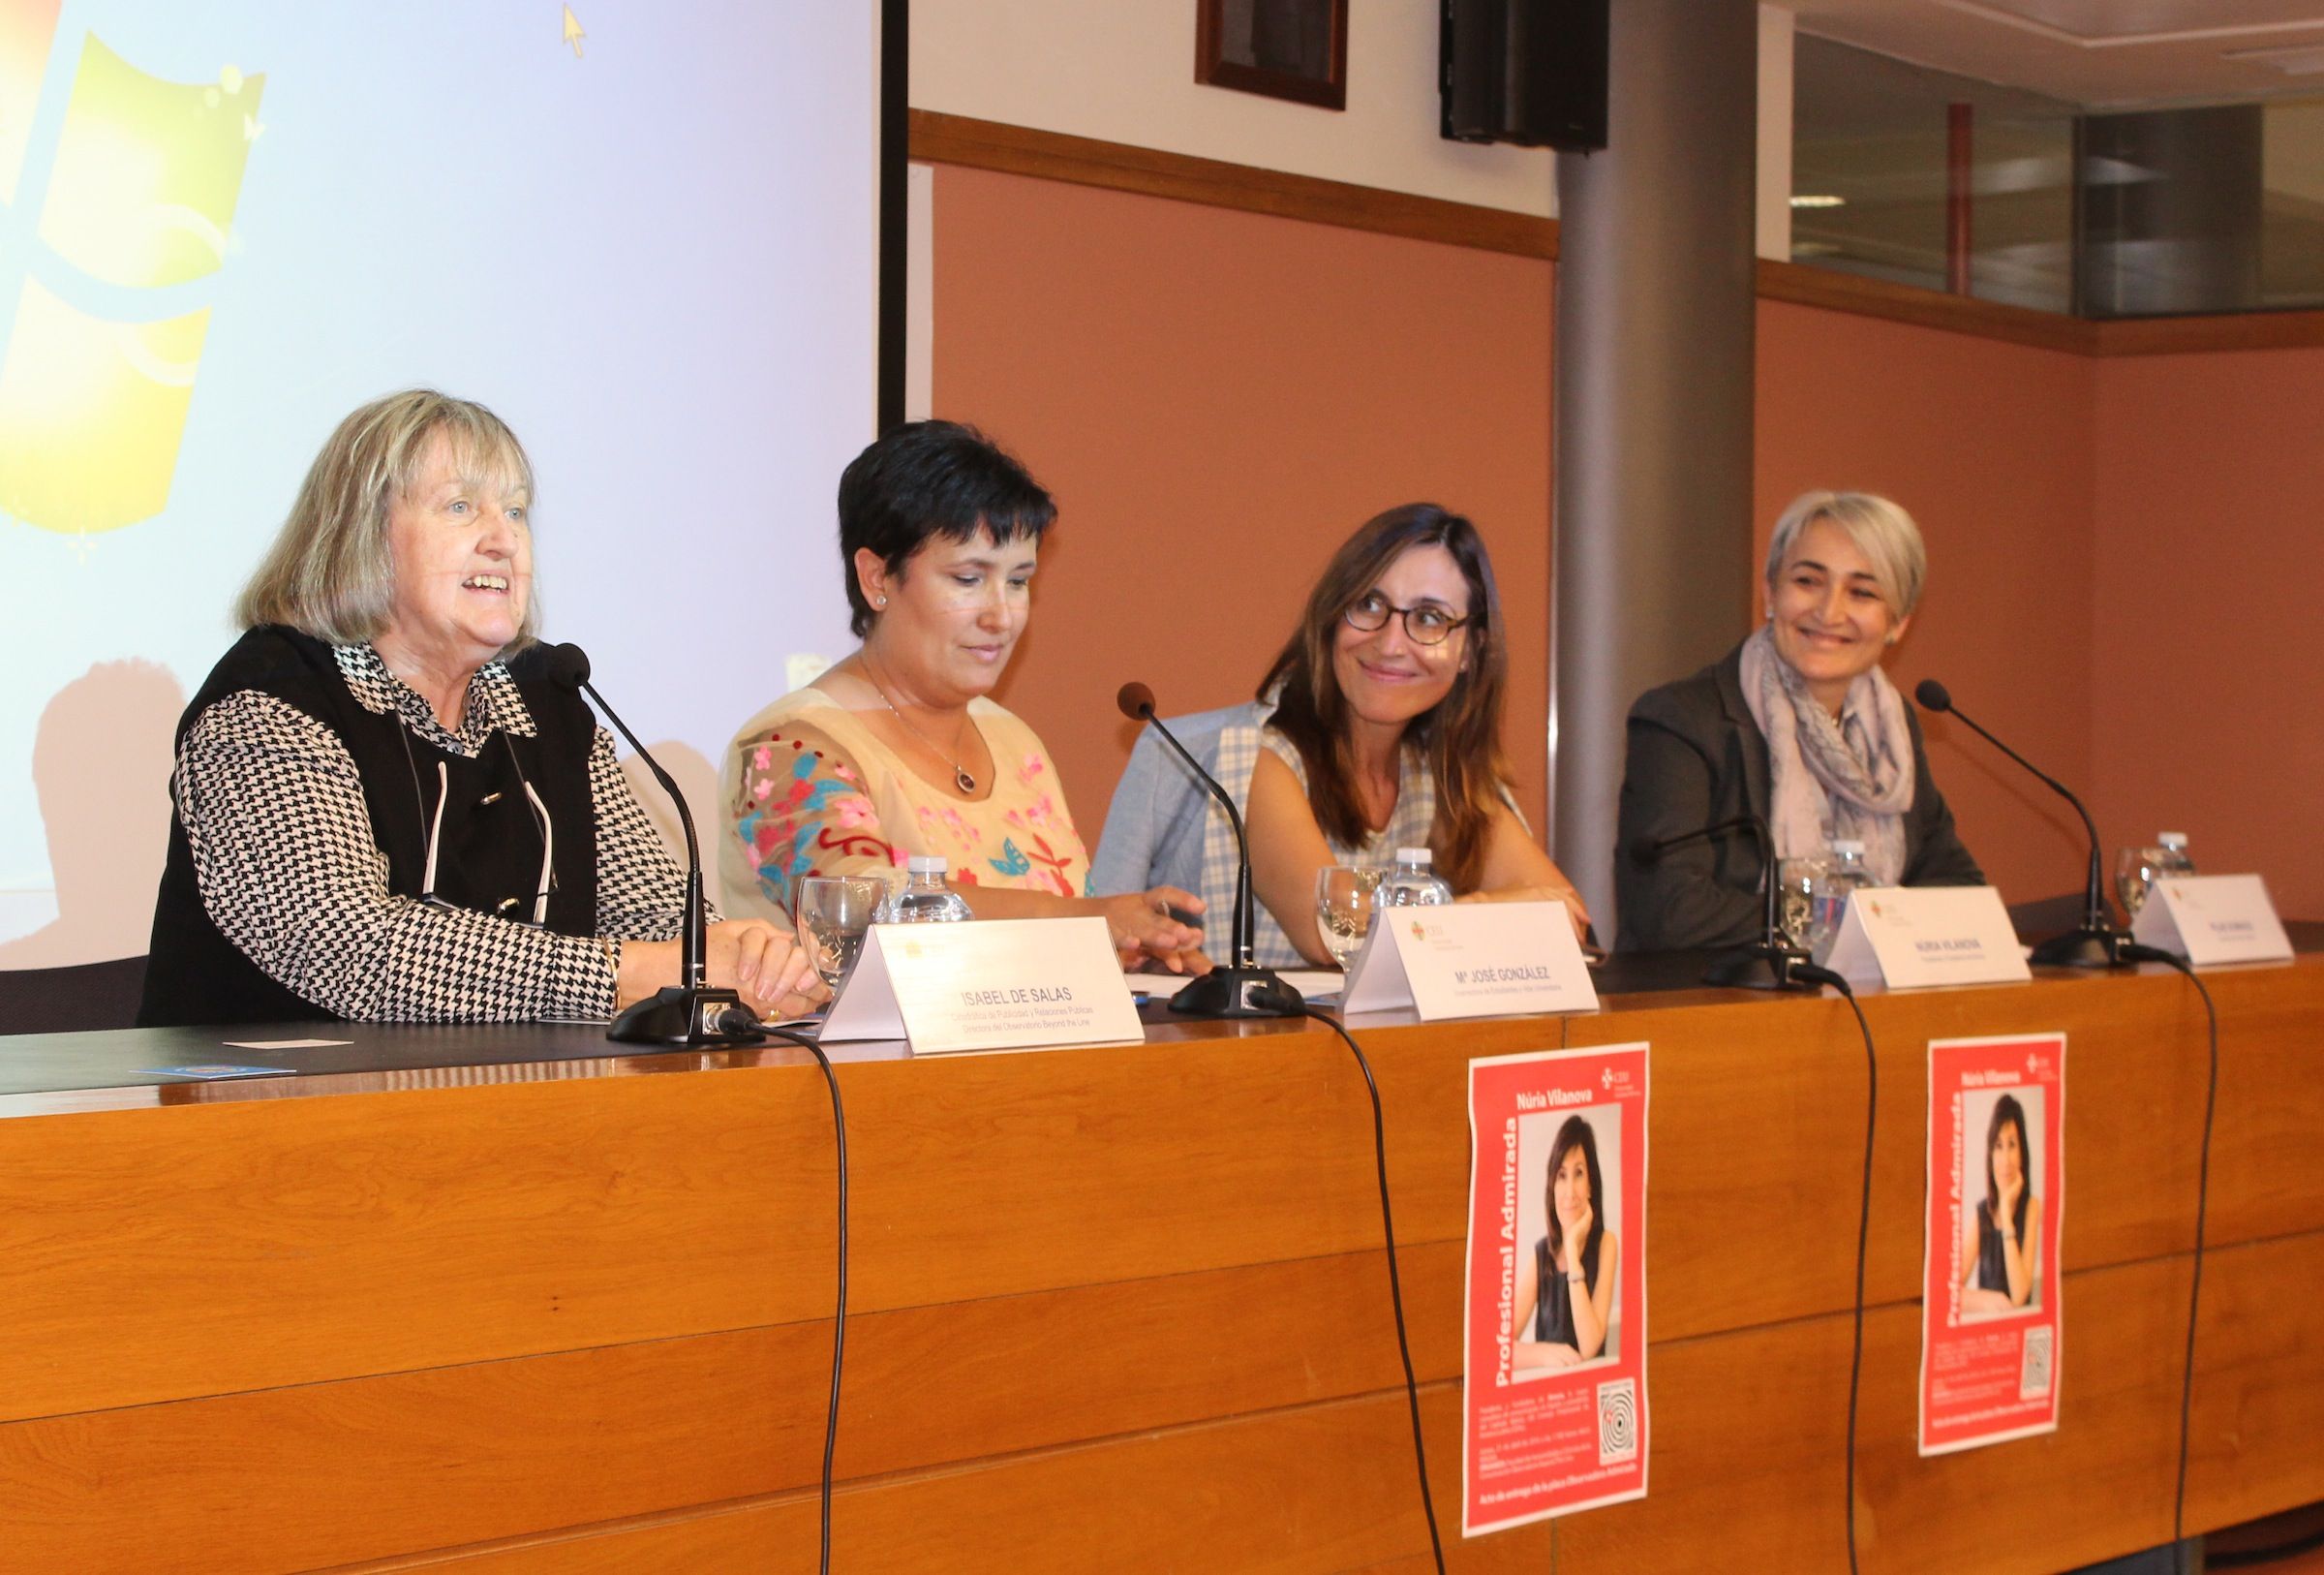 Isabel de Salas, María José González, Nuria Vilanova y Pilar Domingo, en la entrega del premio "Profesional AD-mirada" a Vilanova.